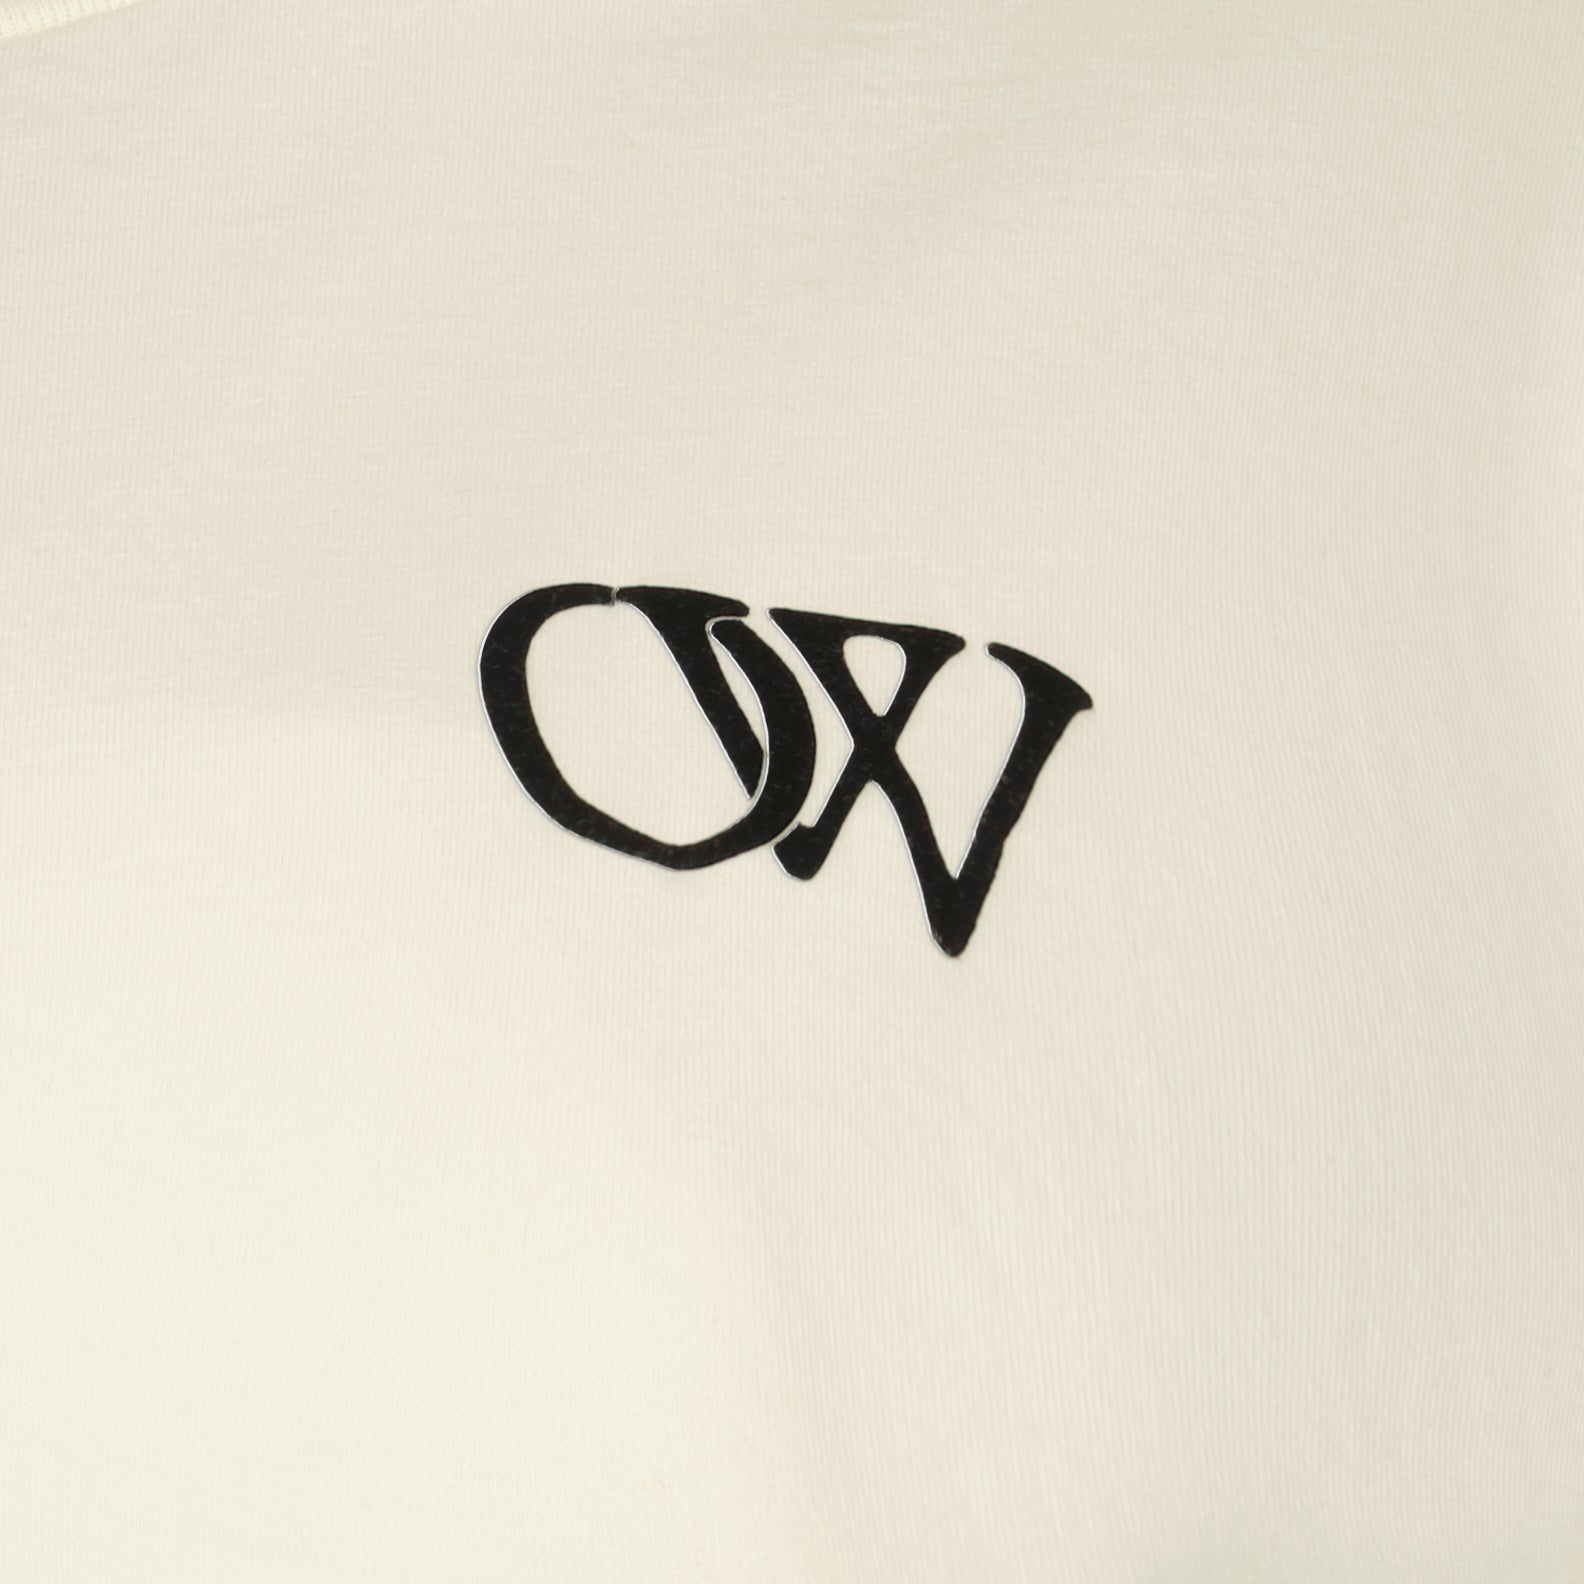 OW t-shirt